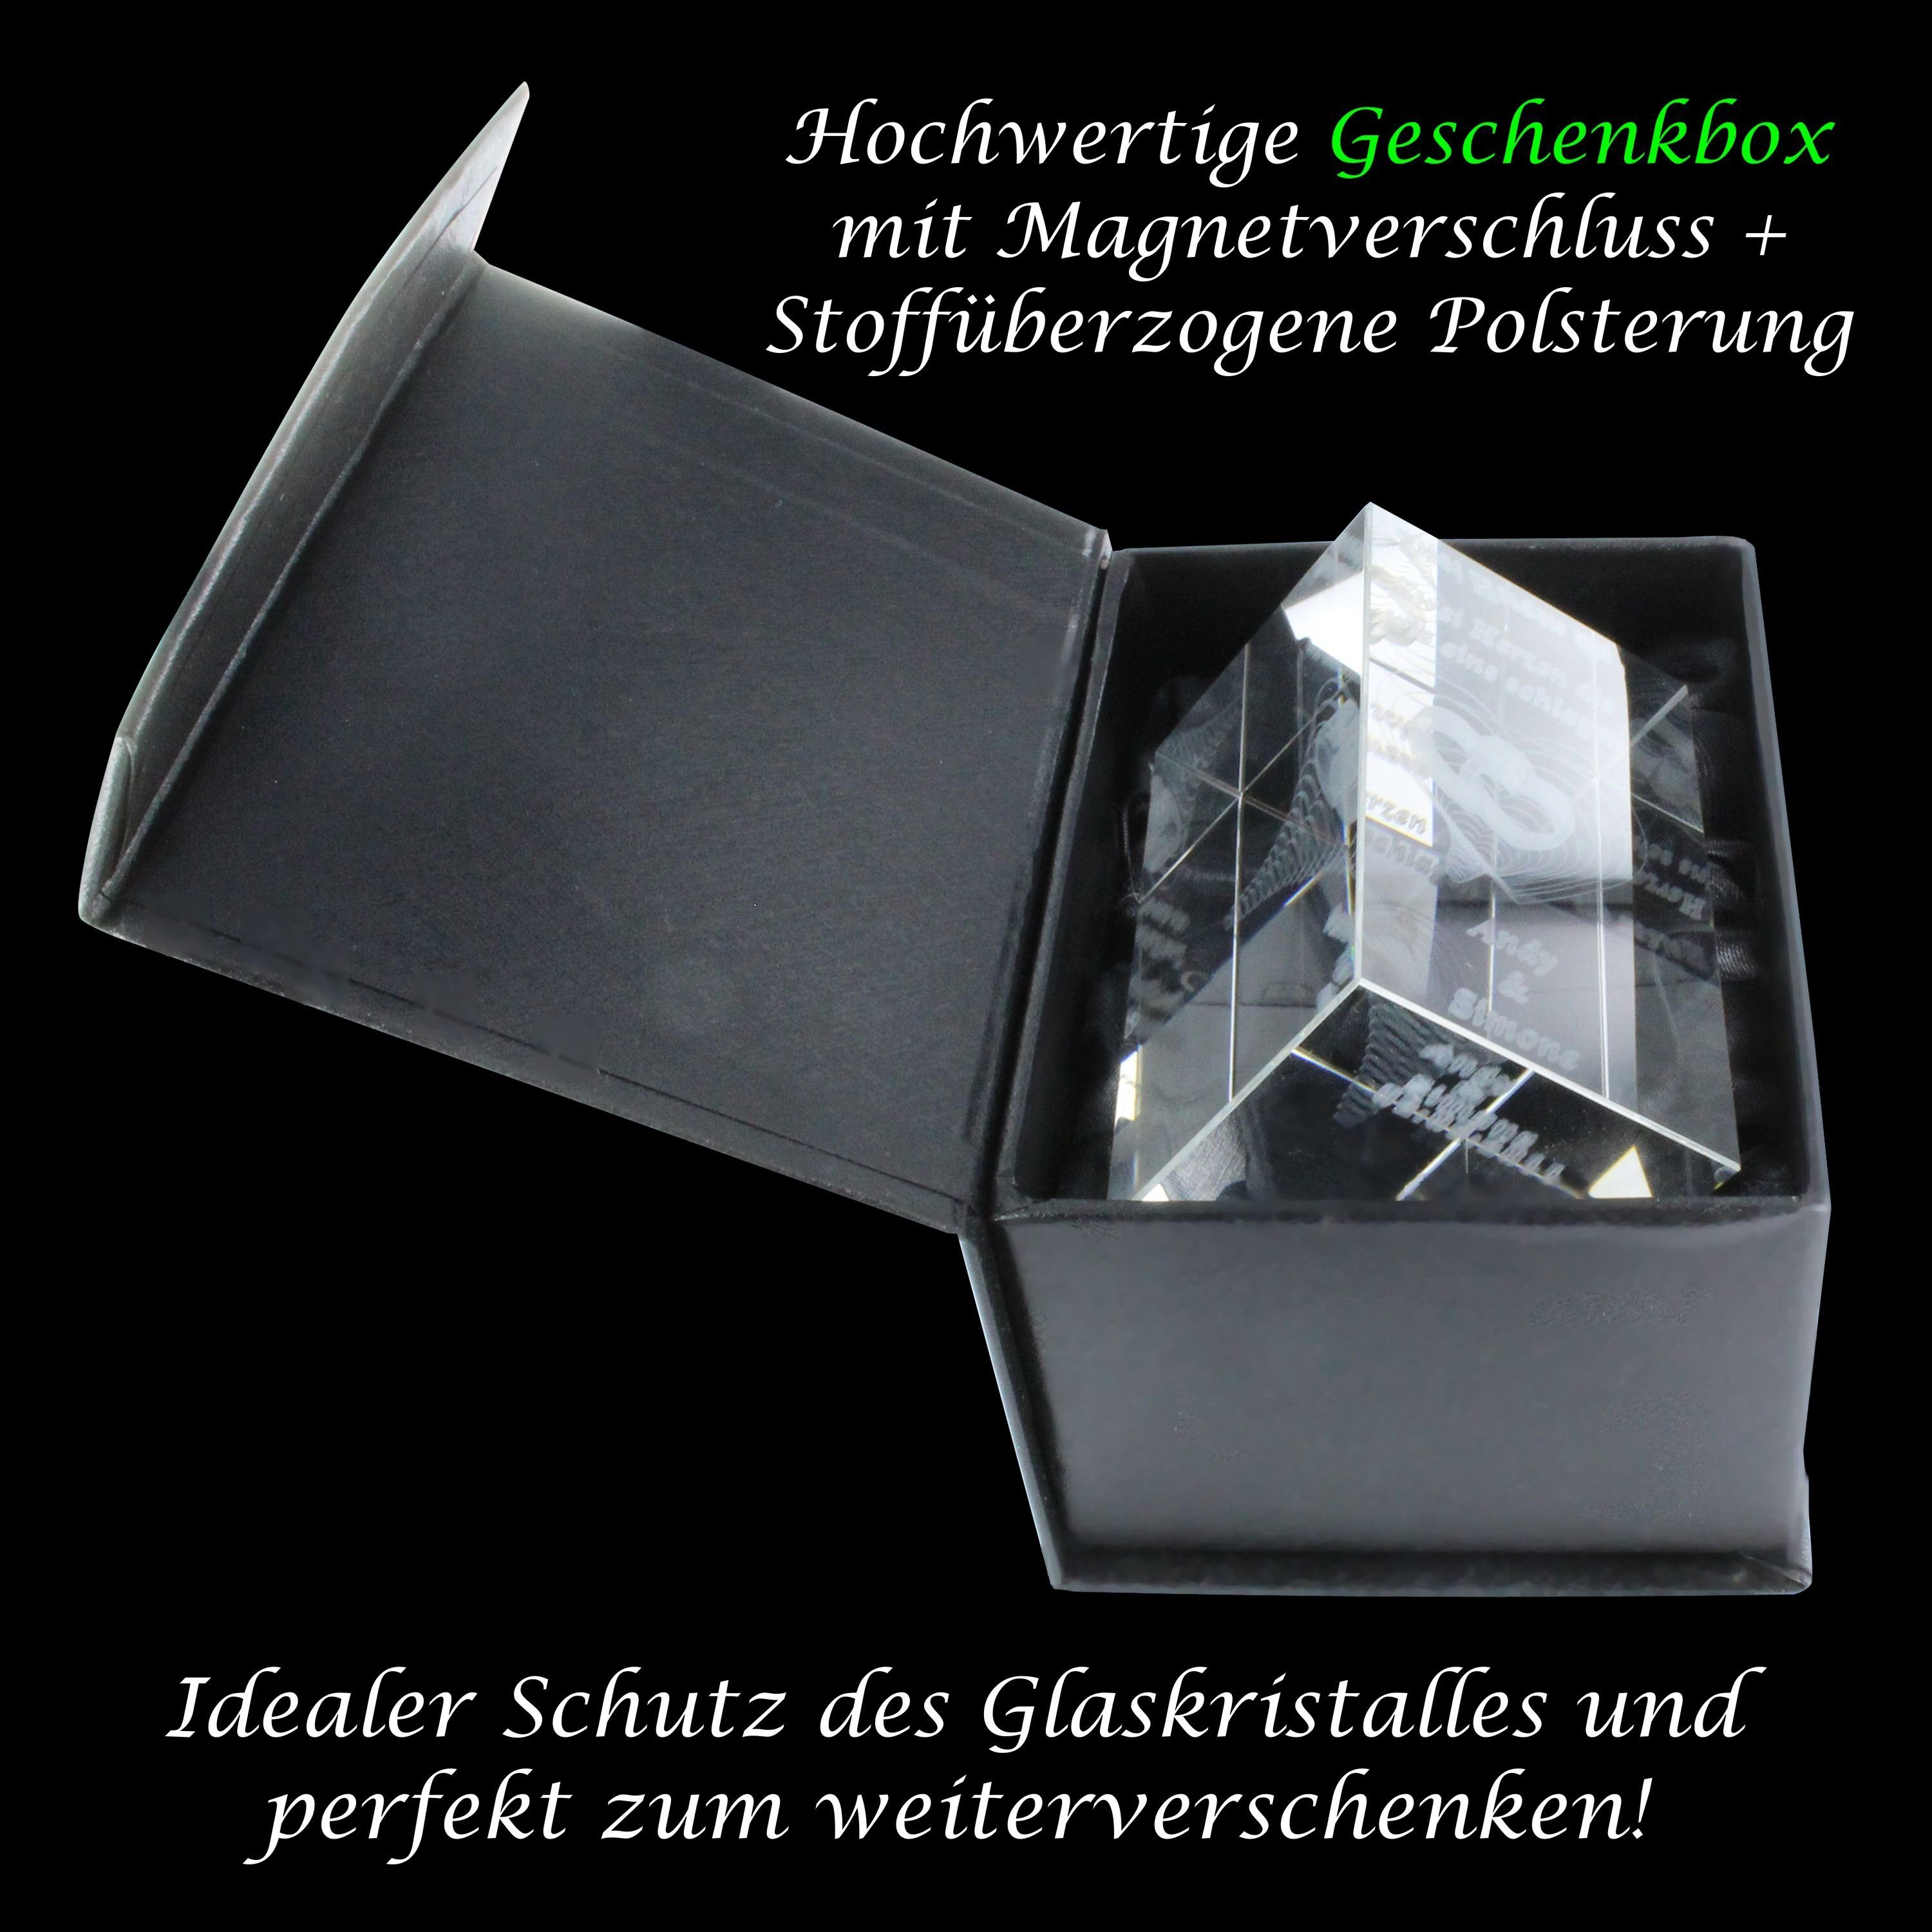 Einhorn, Germany, I Made Glasquader VIP-LASER 3D Hochwertige Dekofigur Familienbetrieb Geschenkbox, in